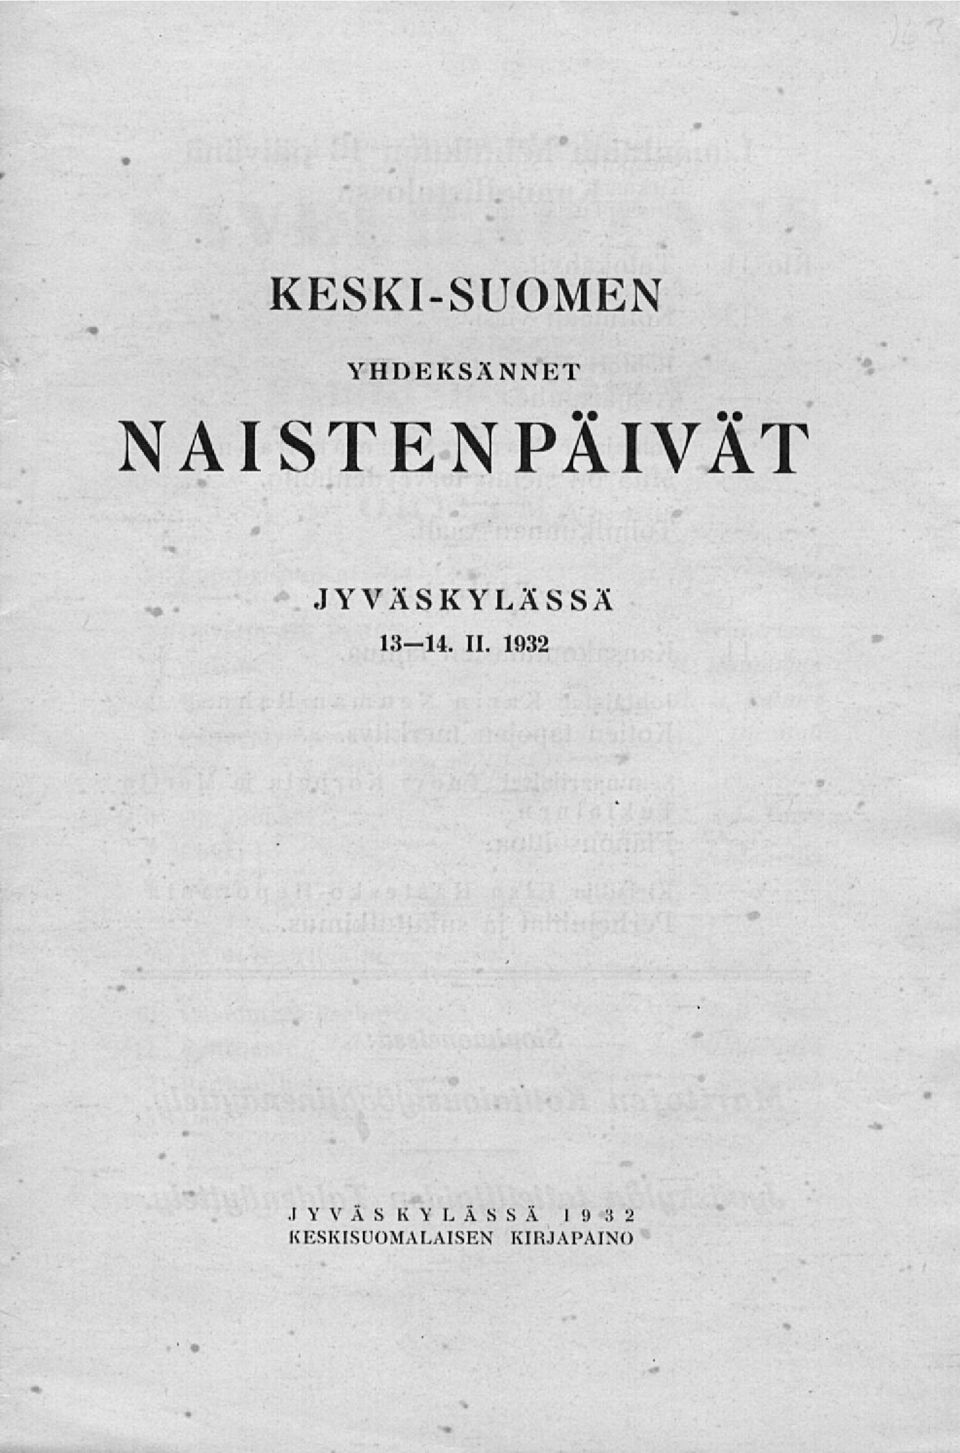 JYVÄSKYLÄSSÄ 13-14. 11. 1932.